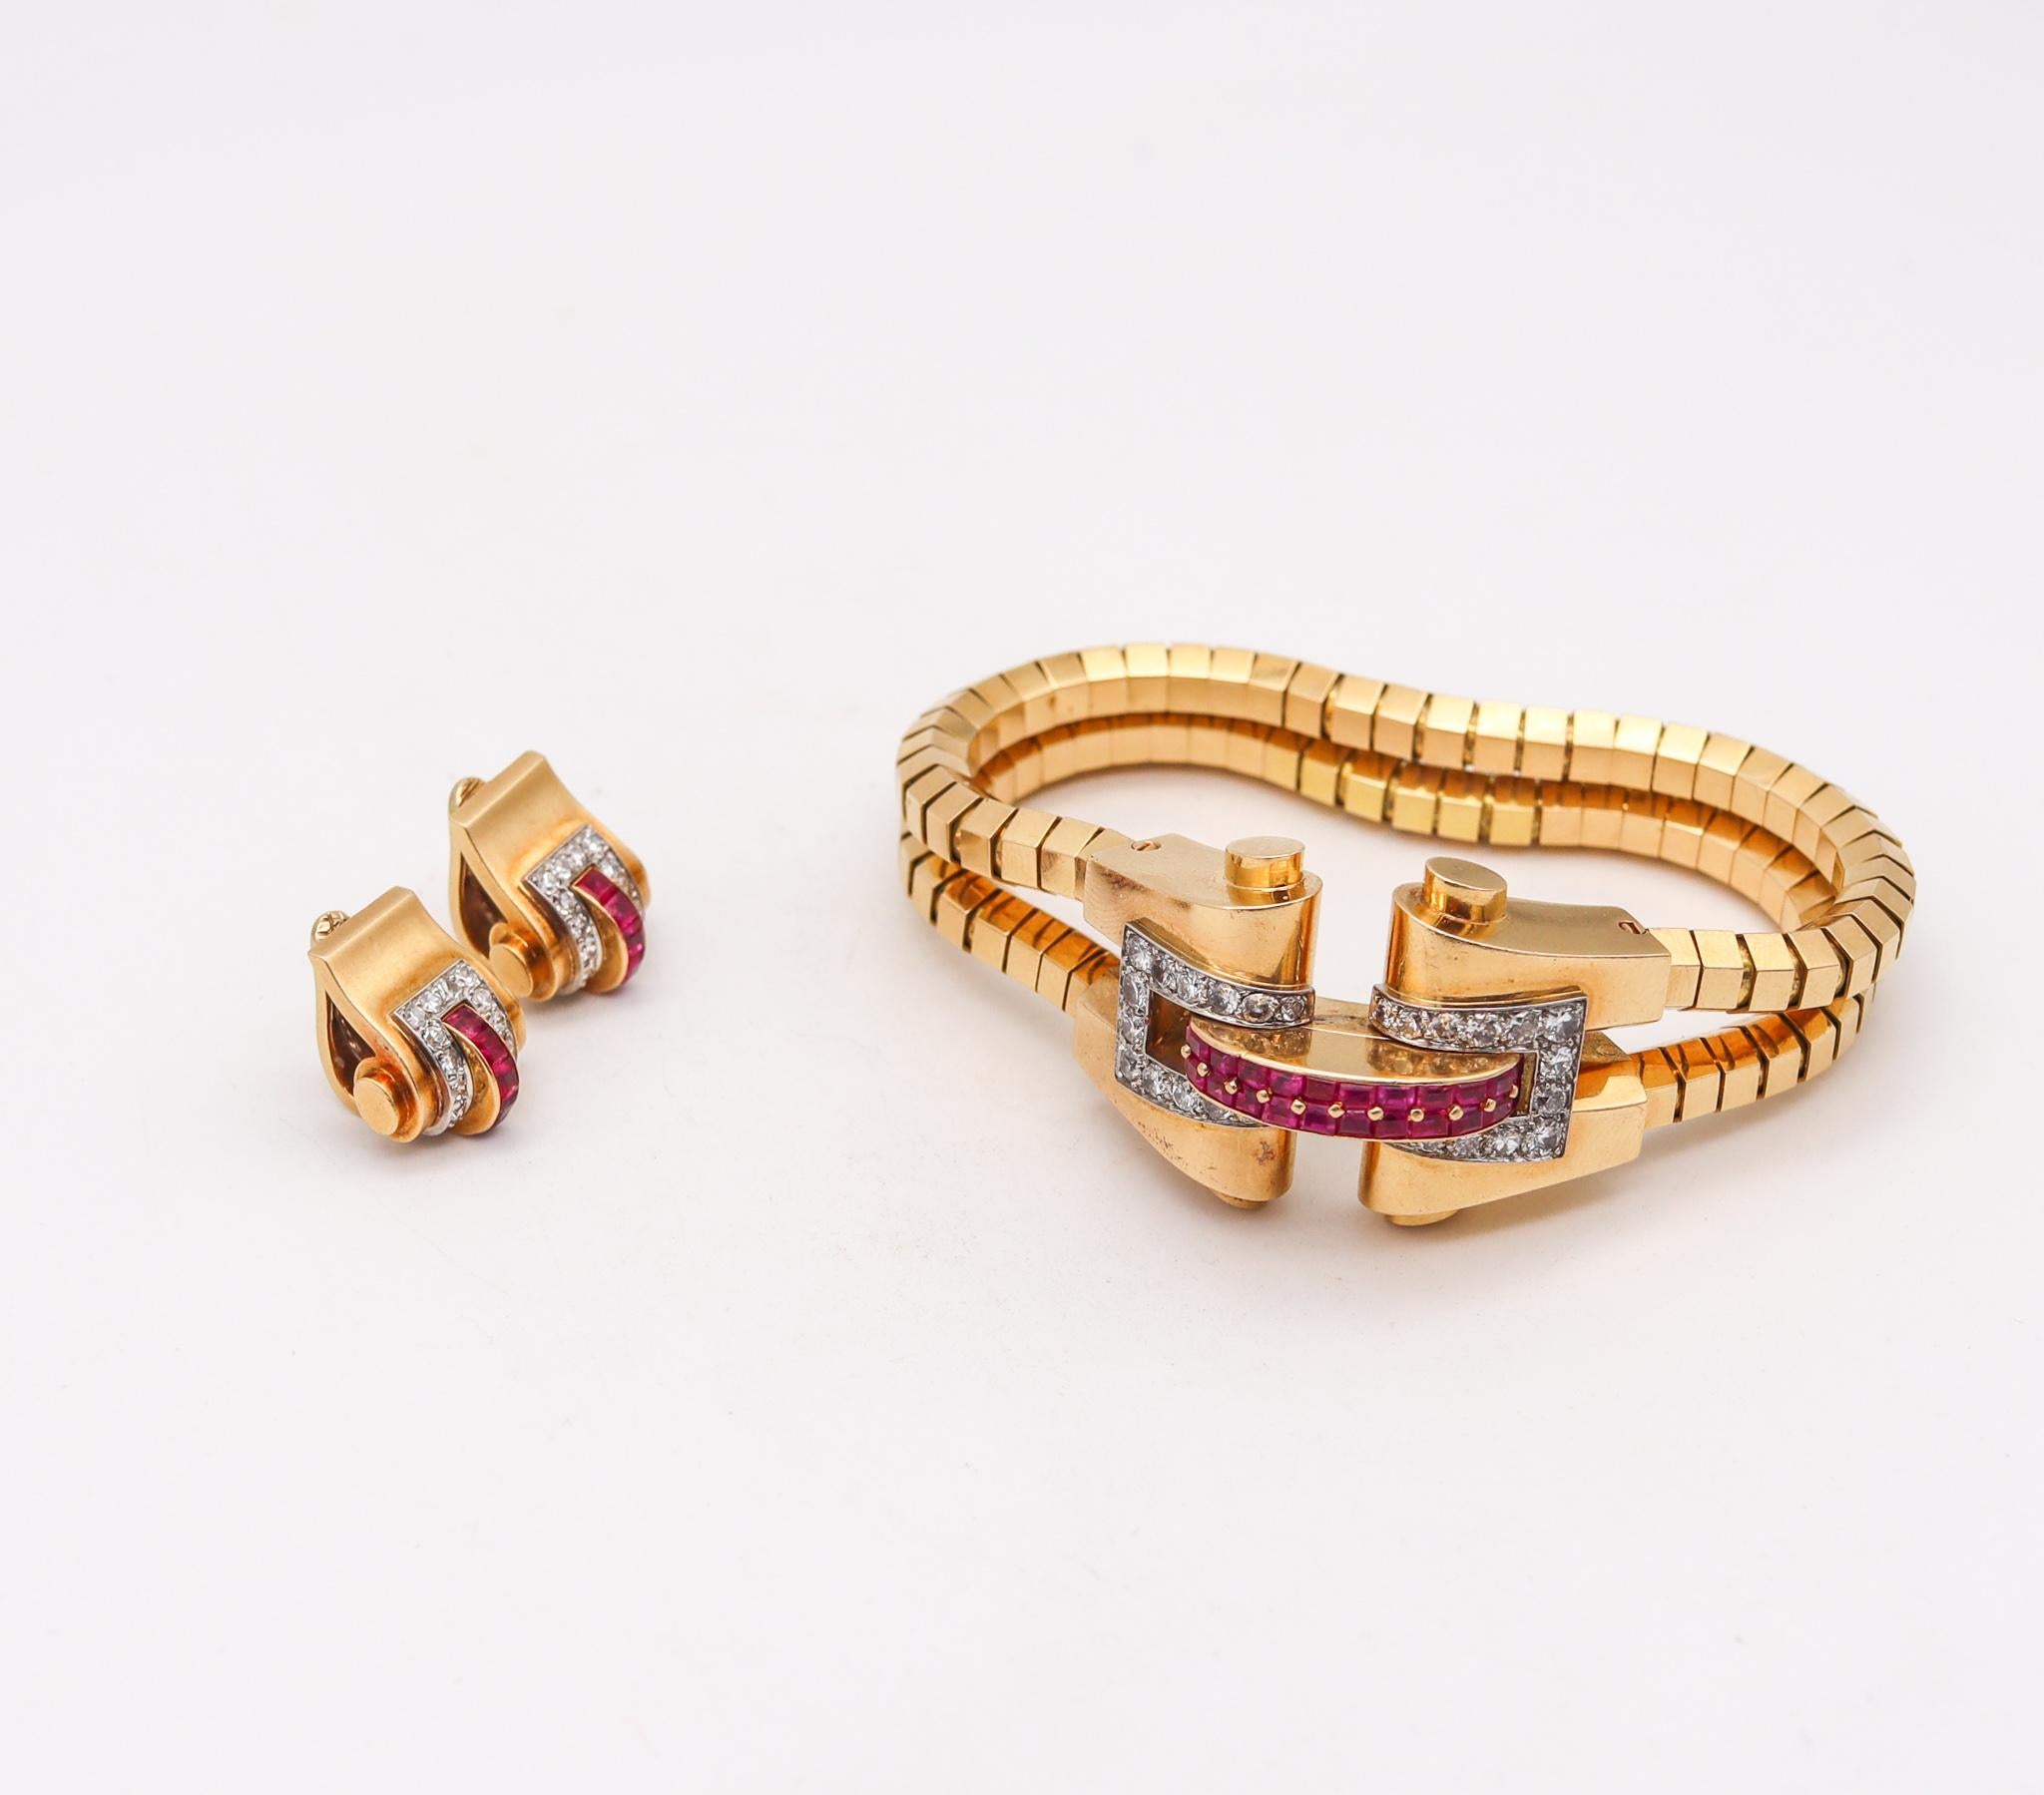 French Cut Boucheron 1937 Paris Bracelet & Earrings Suite 18Kt Gold 6.88 Ct Diamonds Rubies